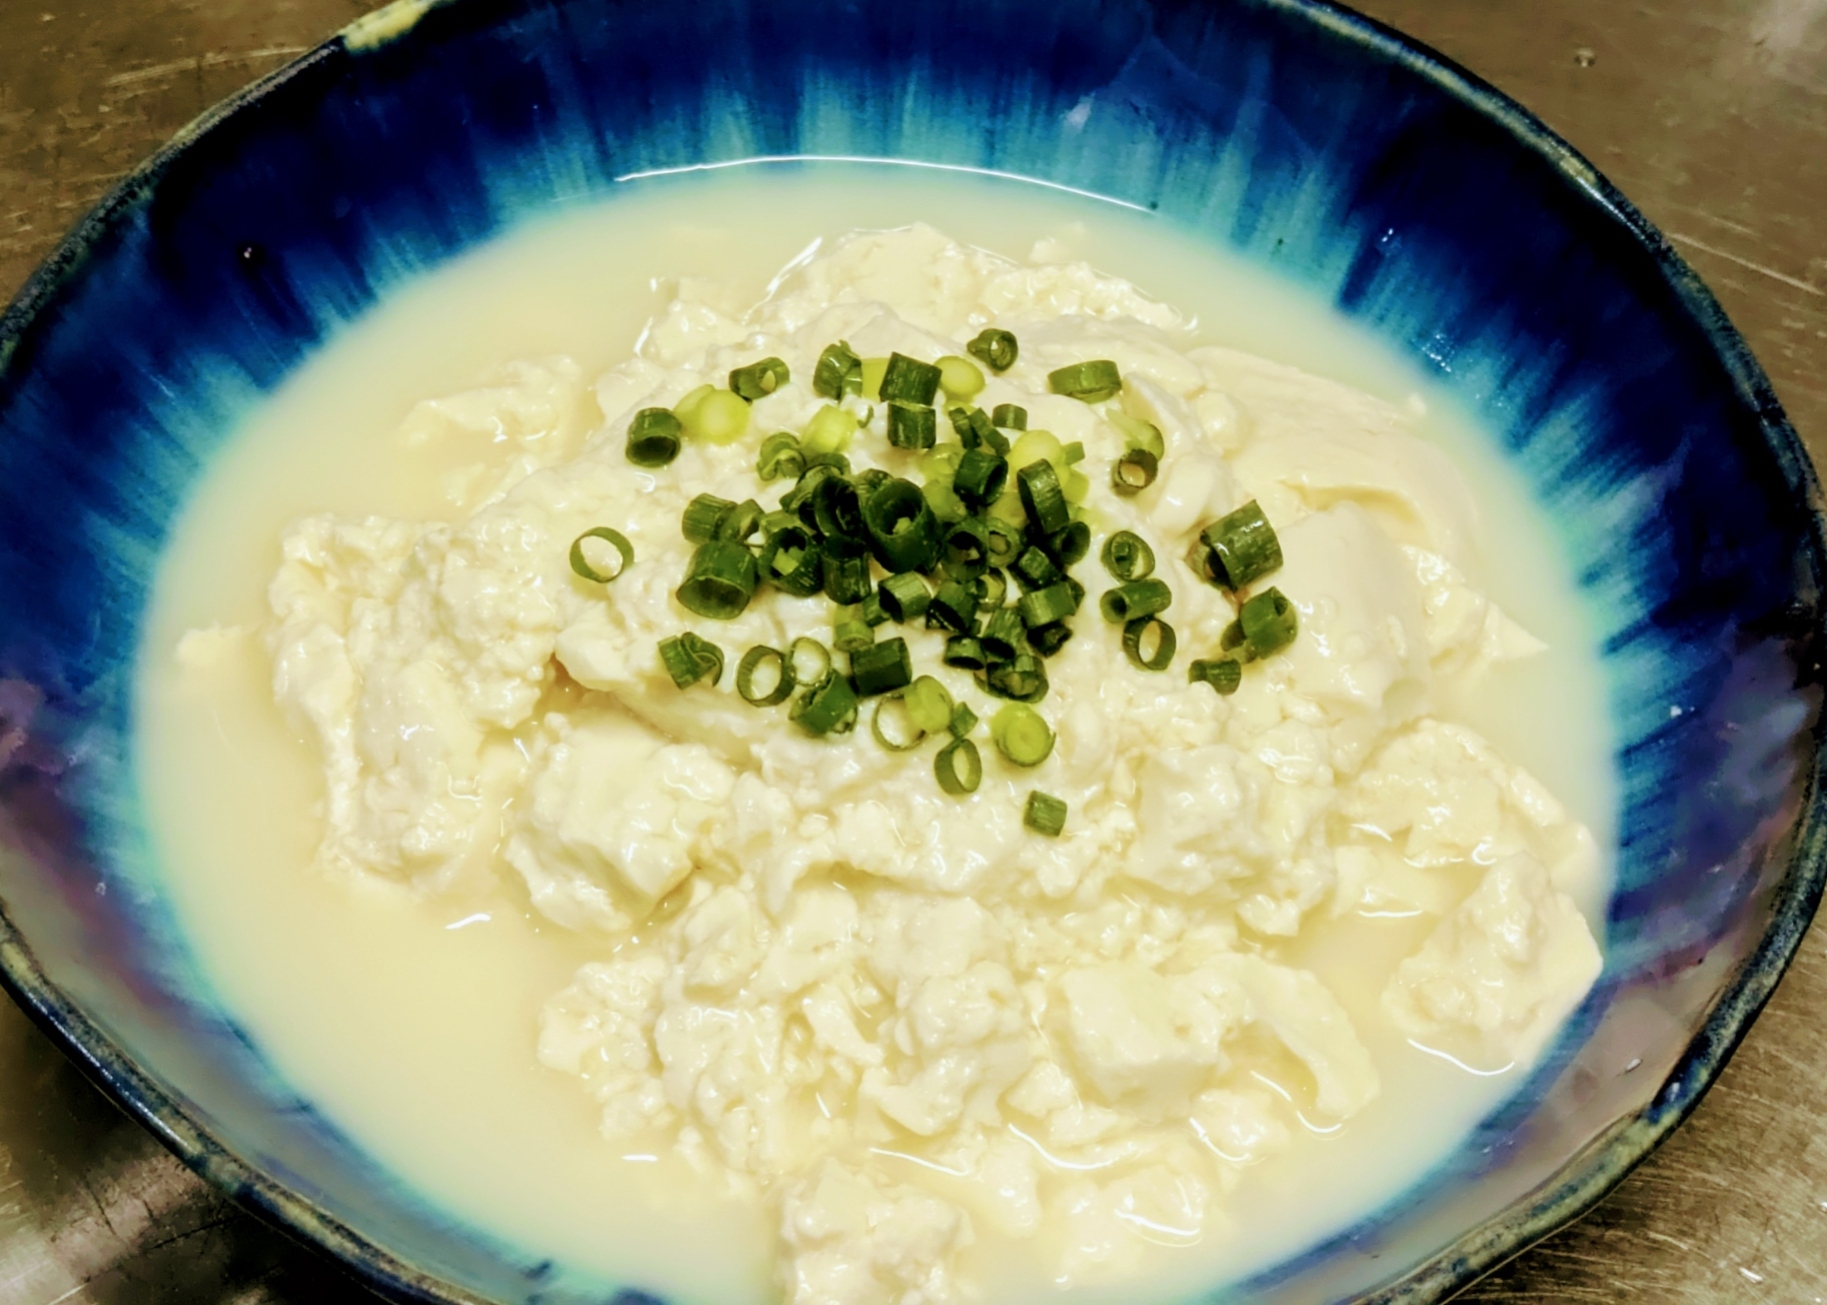 【ゆし豆腐】<br>沖縄の郷土料理でやわらかいおぼろ状の豆腐。<br>スタッフおすすめの食べ方はゆし豆腐+みそ汁です。ぜひお試しください。